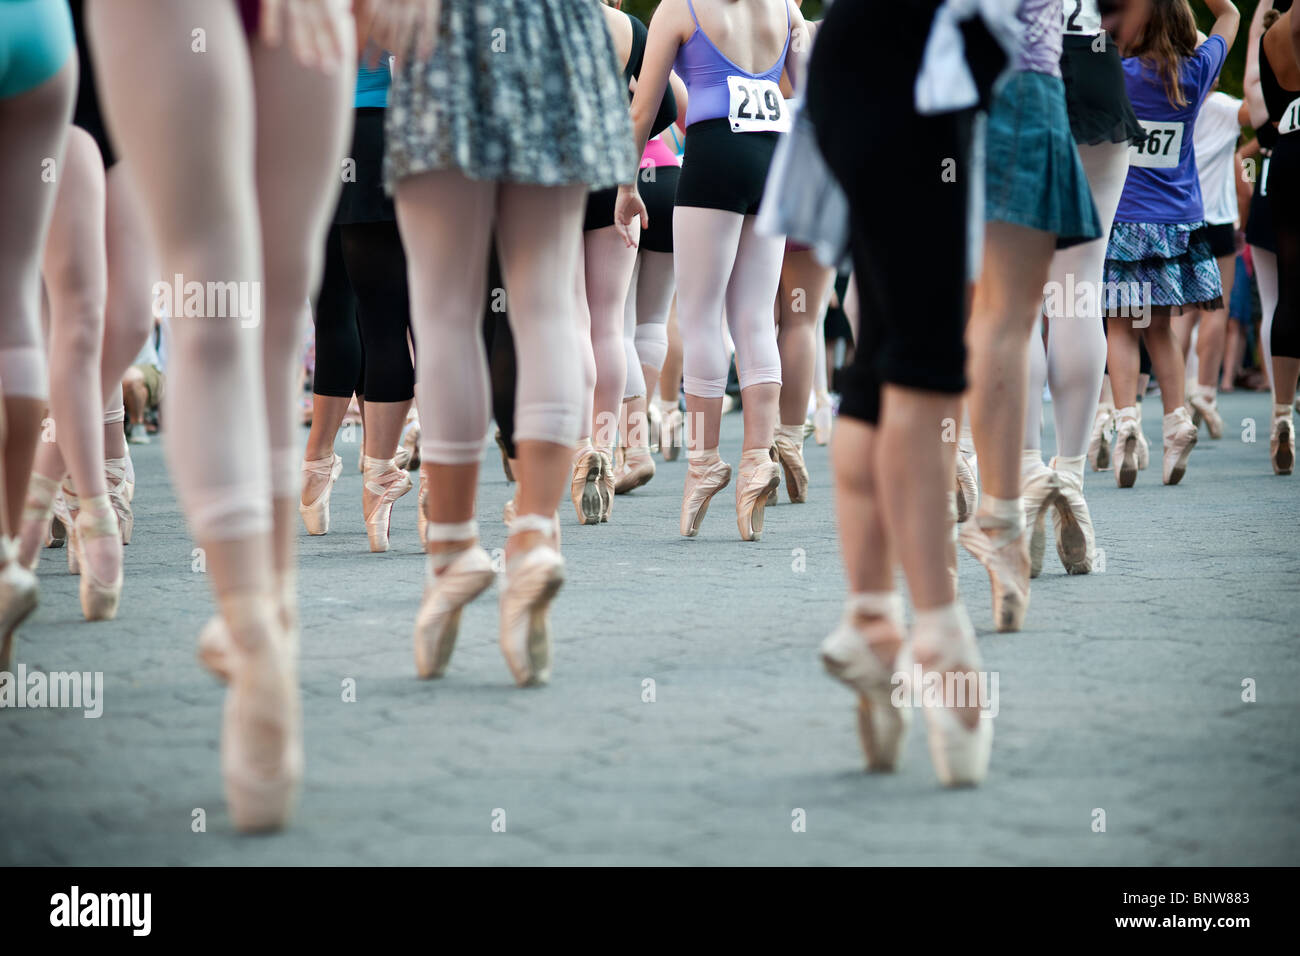 Des centaines de ballerines se rassembler dans Central Park à New York pour briser le record mondial Guinness des 'plus ballerines en Pointe' Banque D'Images